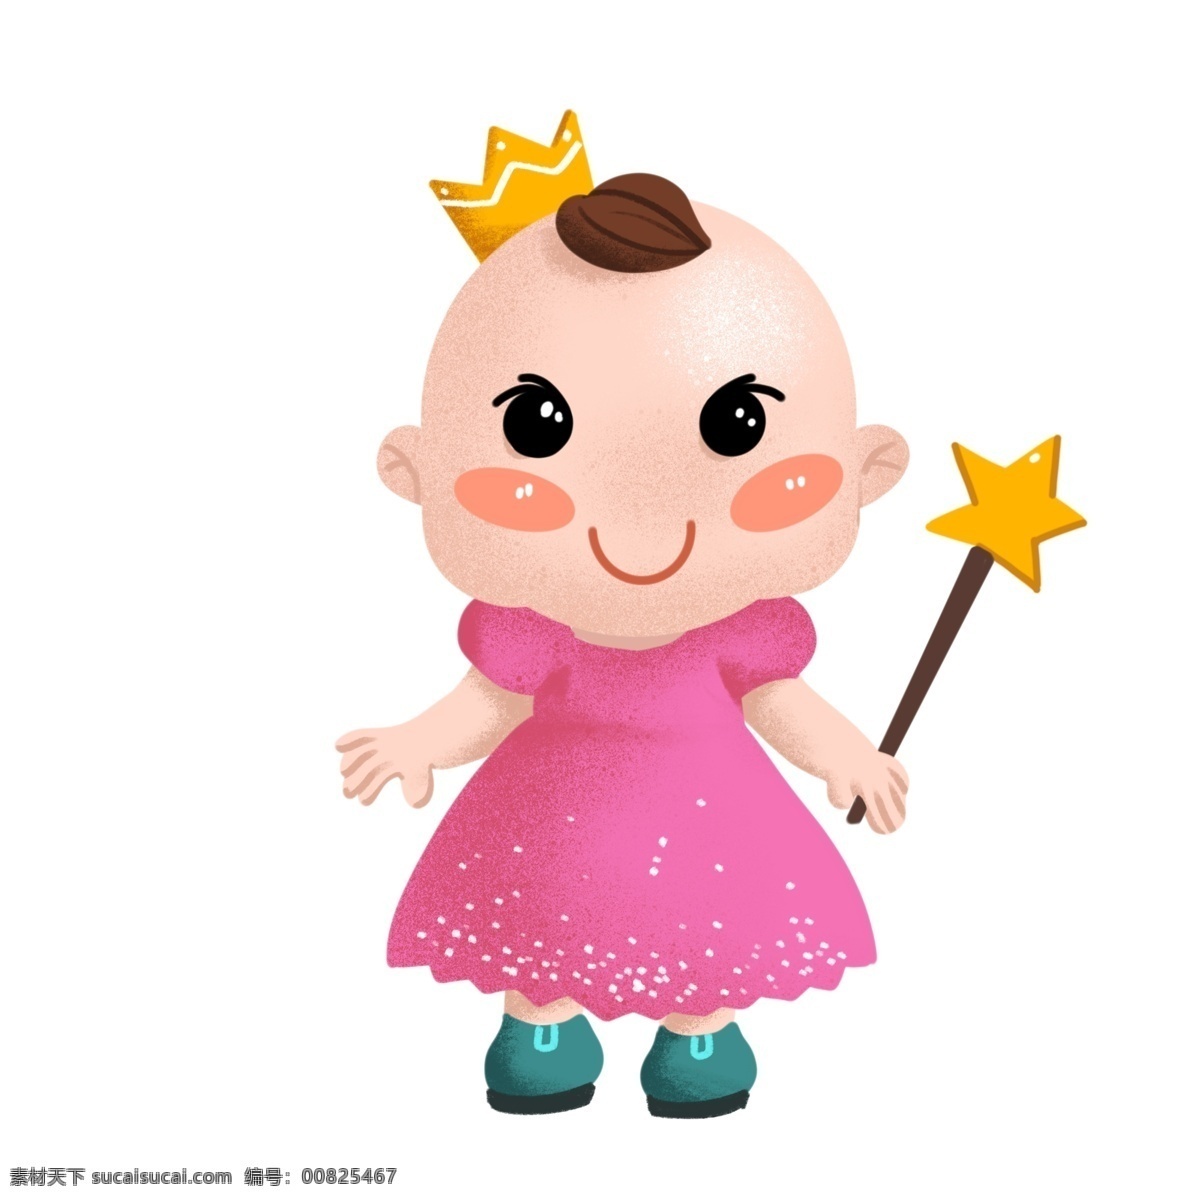 五角星 婴儿 插画 黄色的皇冠 黄色的五角星 五角星玩具 开心的婴儿 婴儿插画